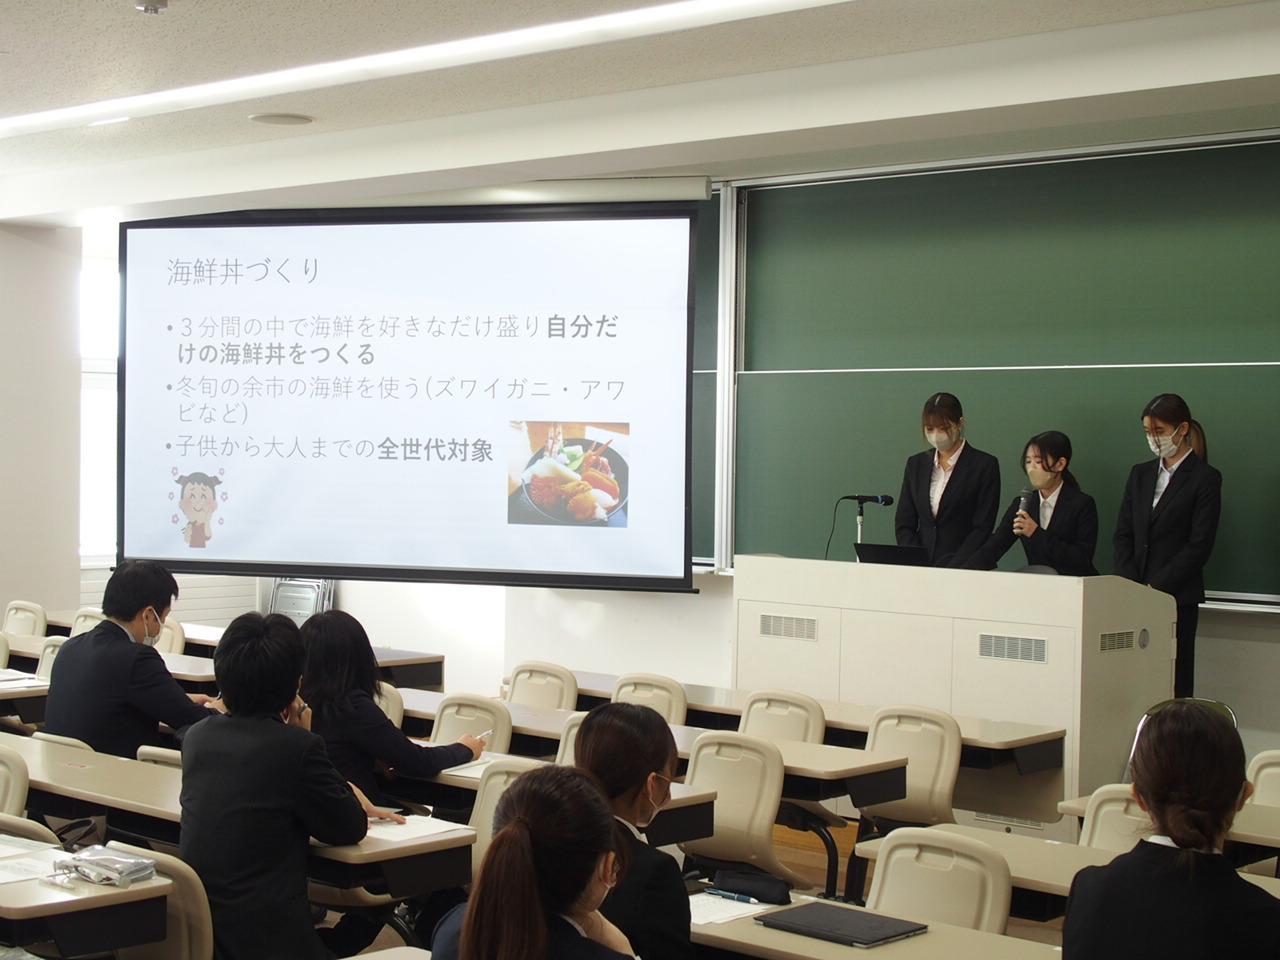 北海道の観光コンテンツについて学生発表会を行いました